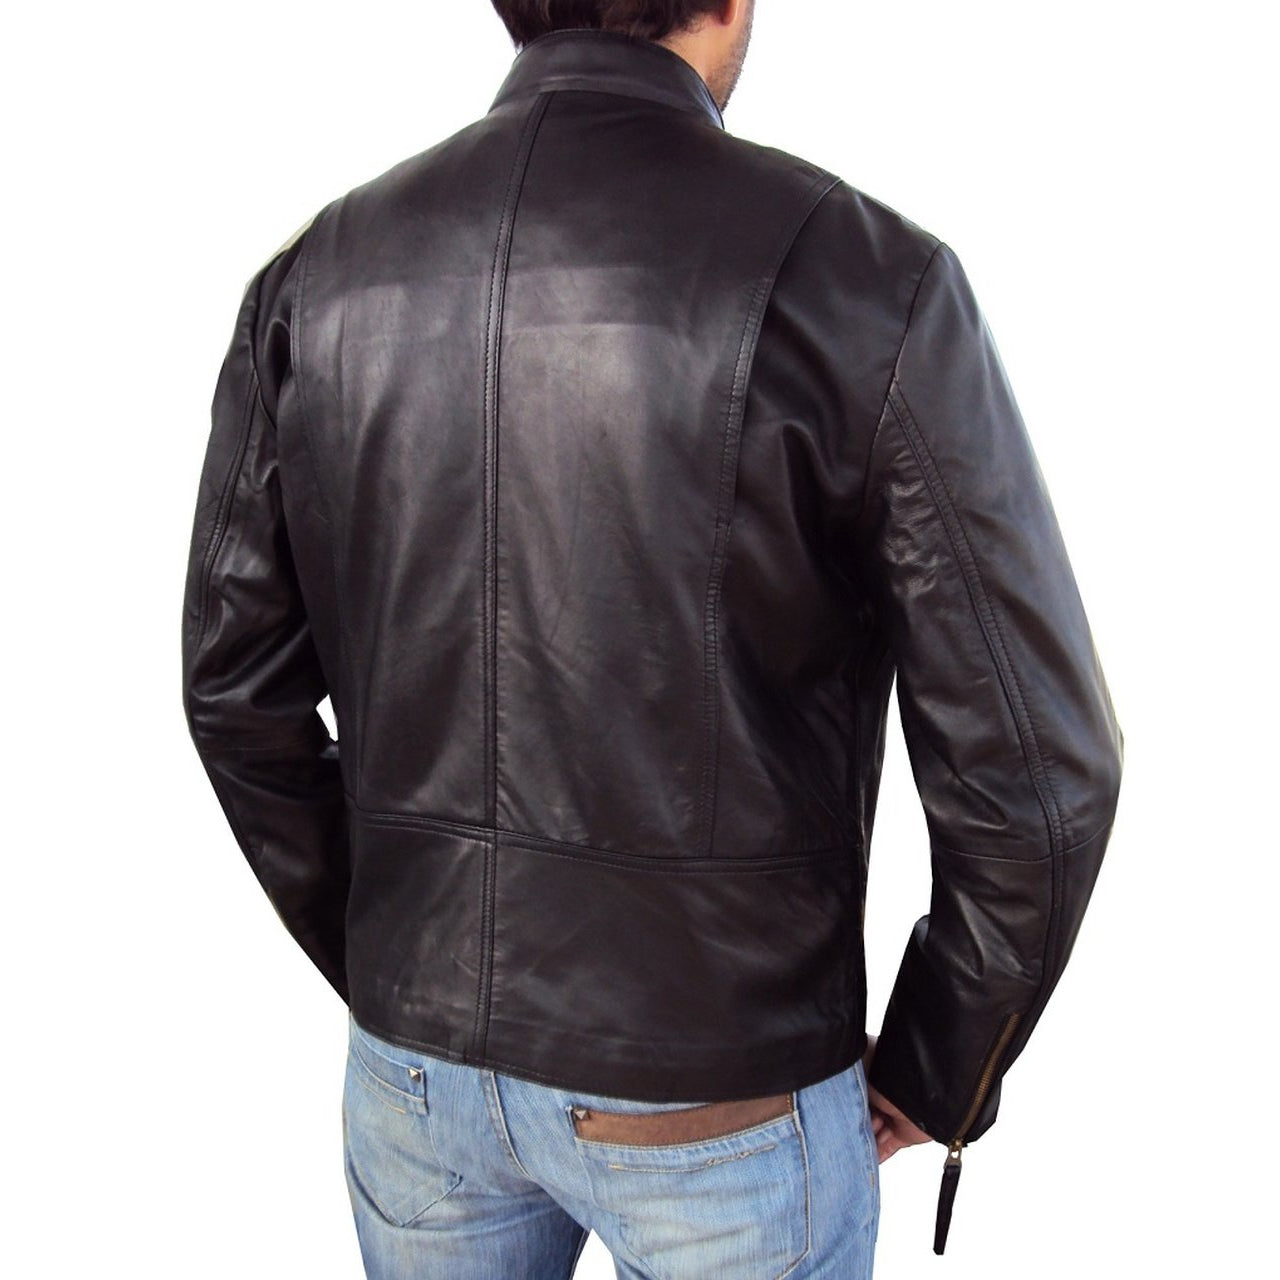 Short Regular Fit Black Leather Jacket for Men - Men Jacket - Leather Jacket